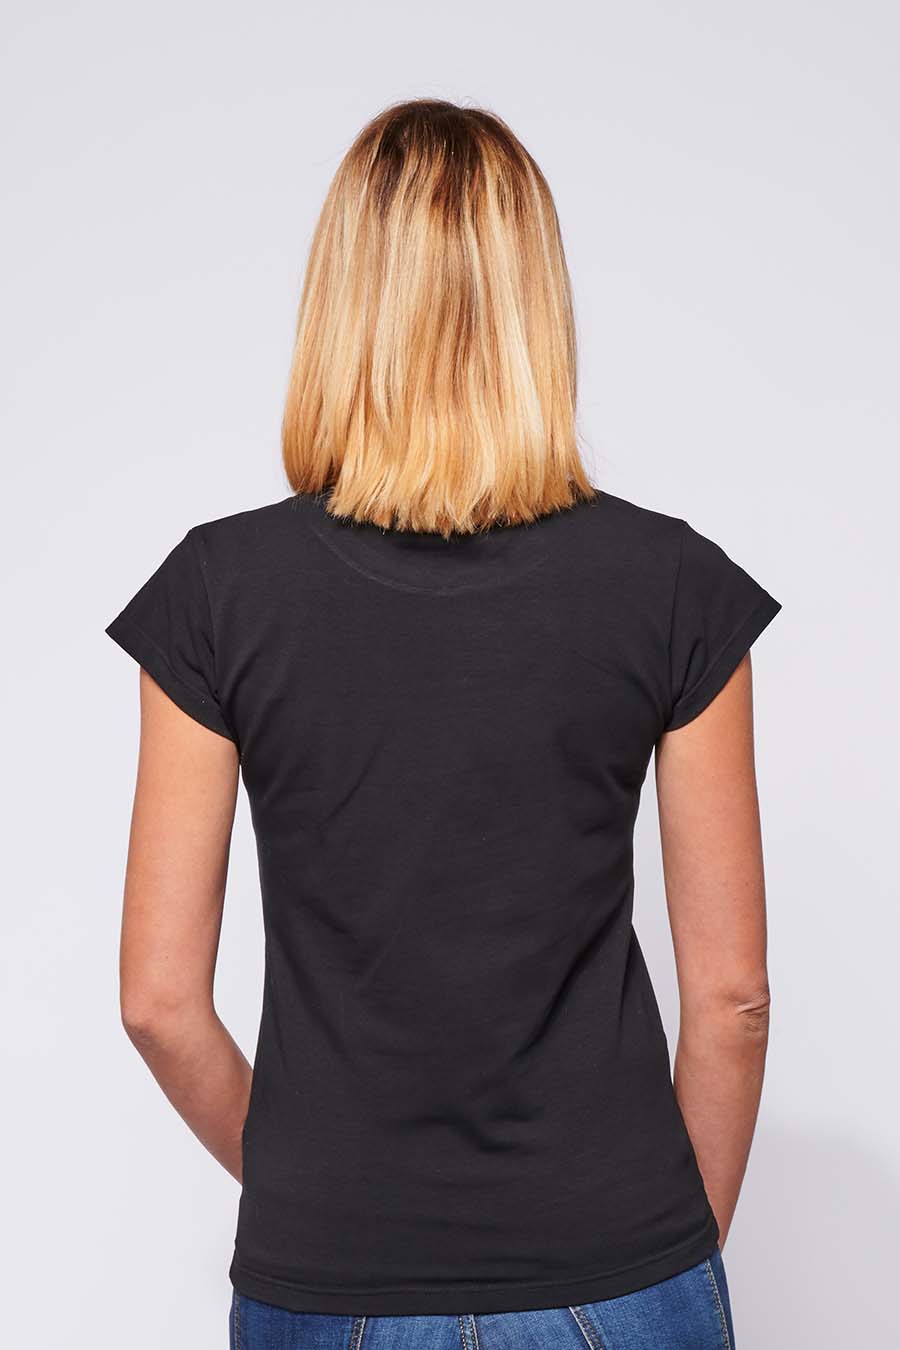 Tee-shirt made in France en coton bio LAURE noir femme de dos - FIL ROUGE